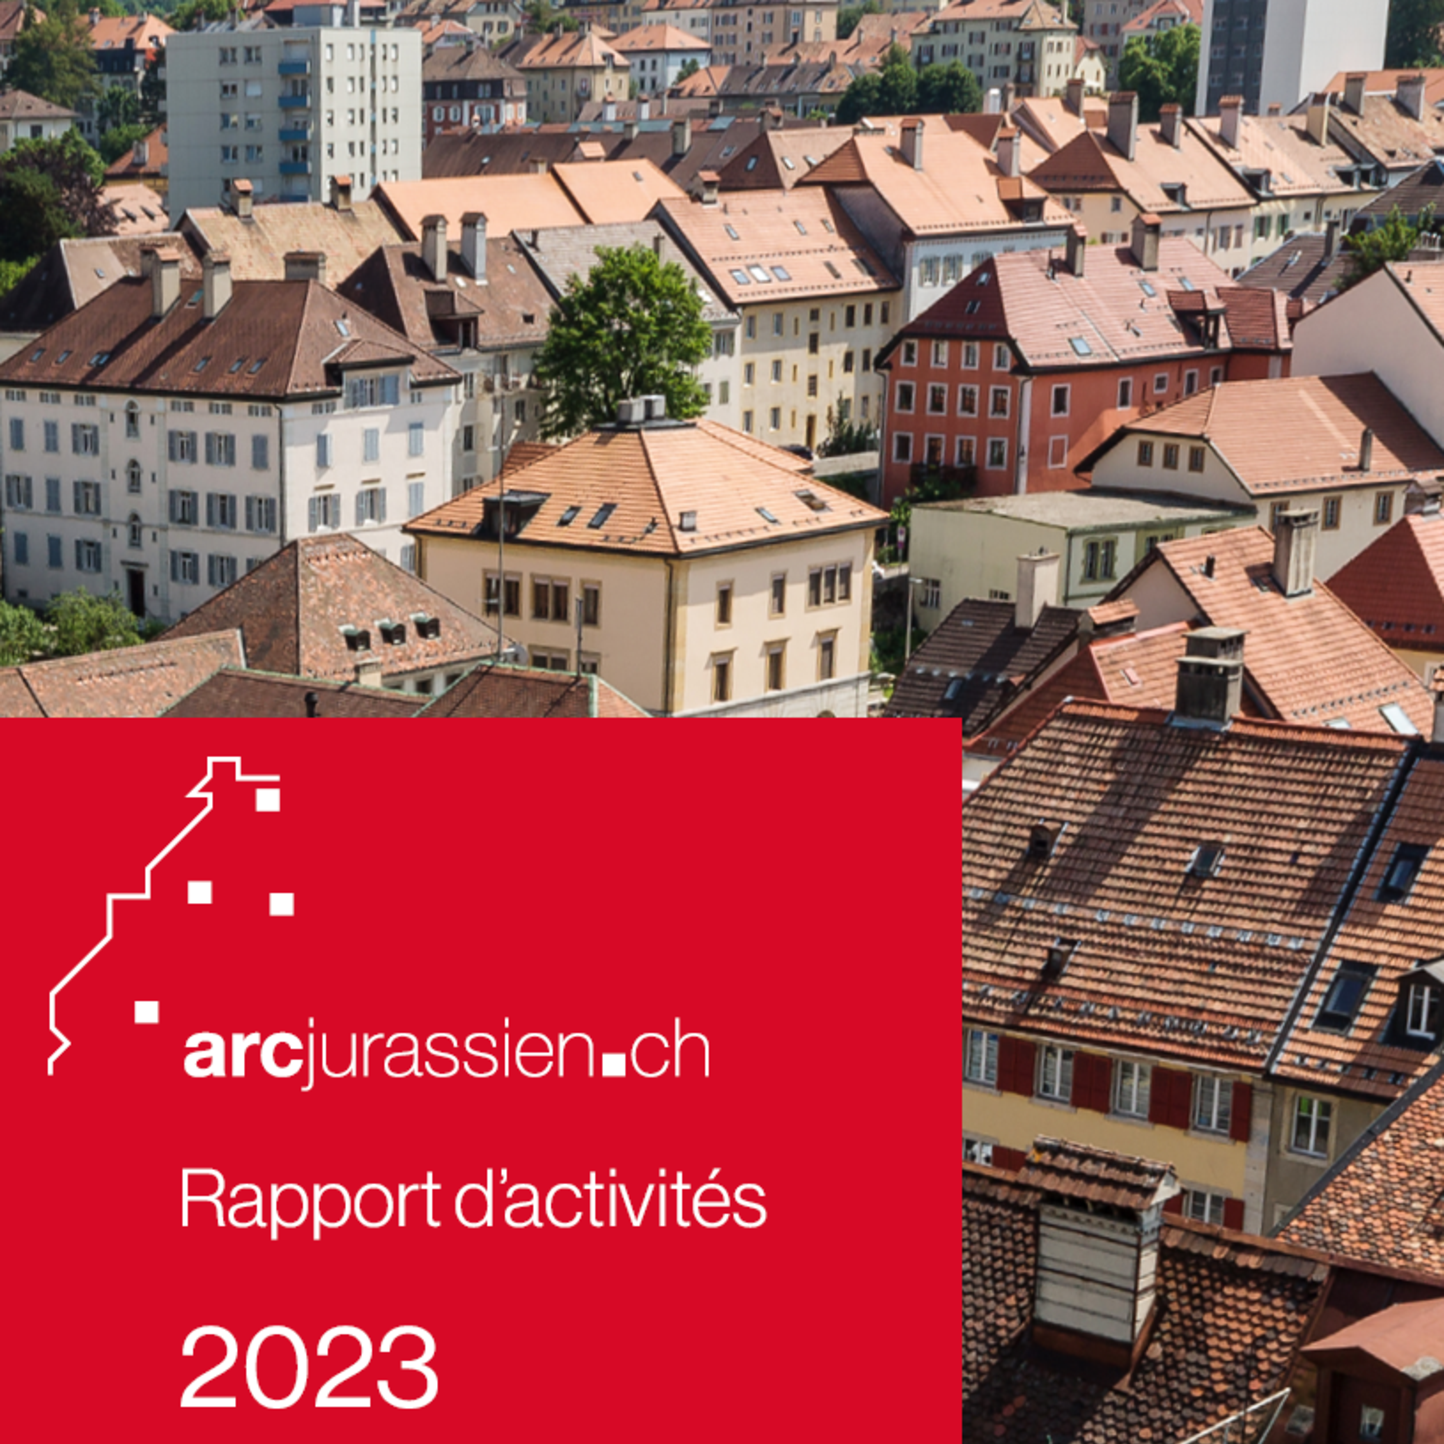 Le rapport d'activités 2023 d'arcjurassien.ch est disponible !